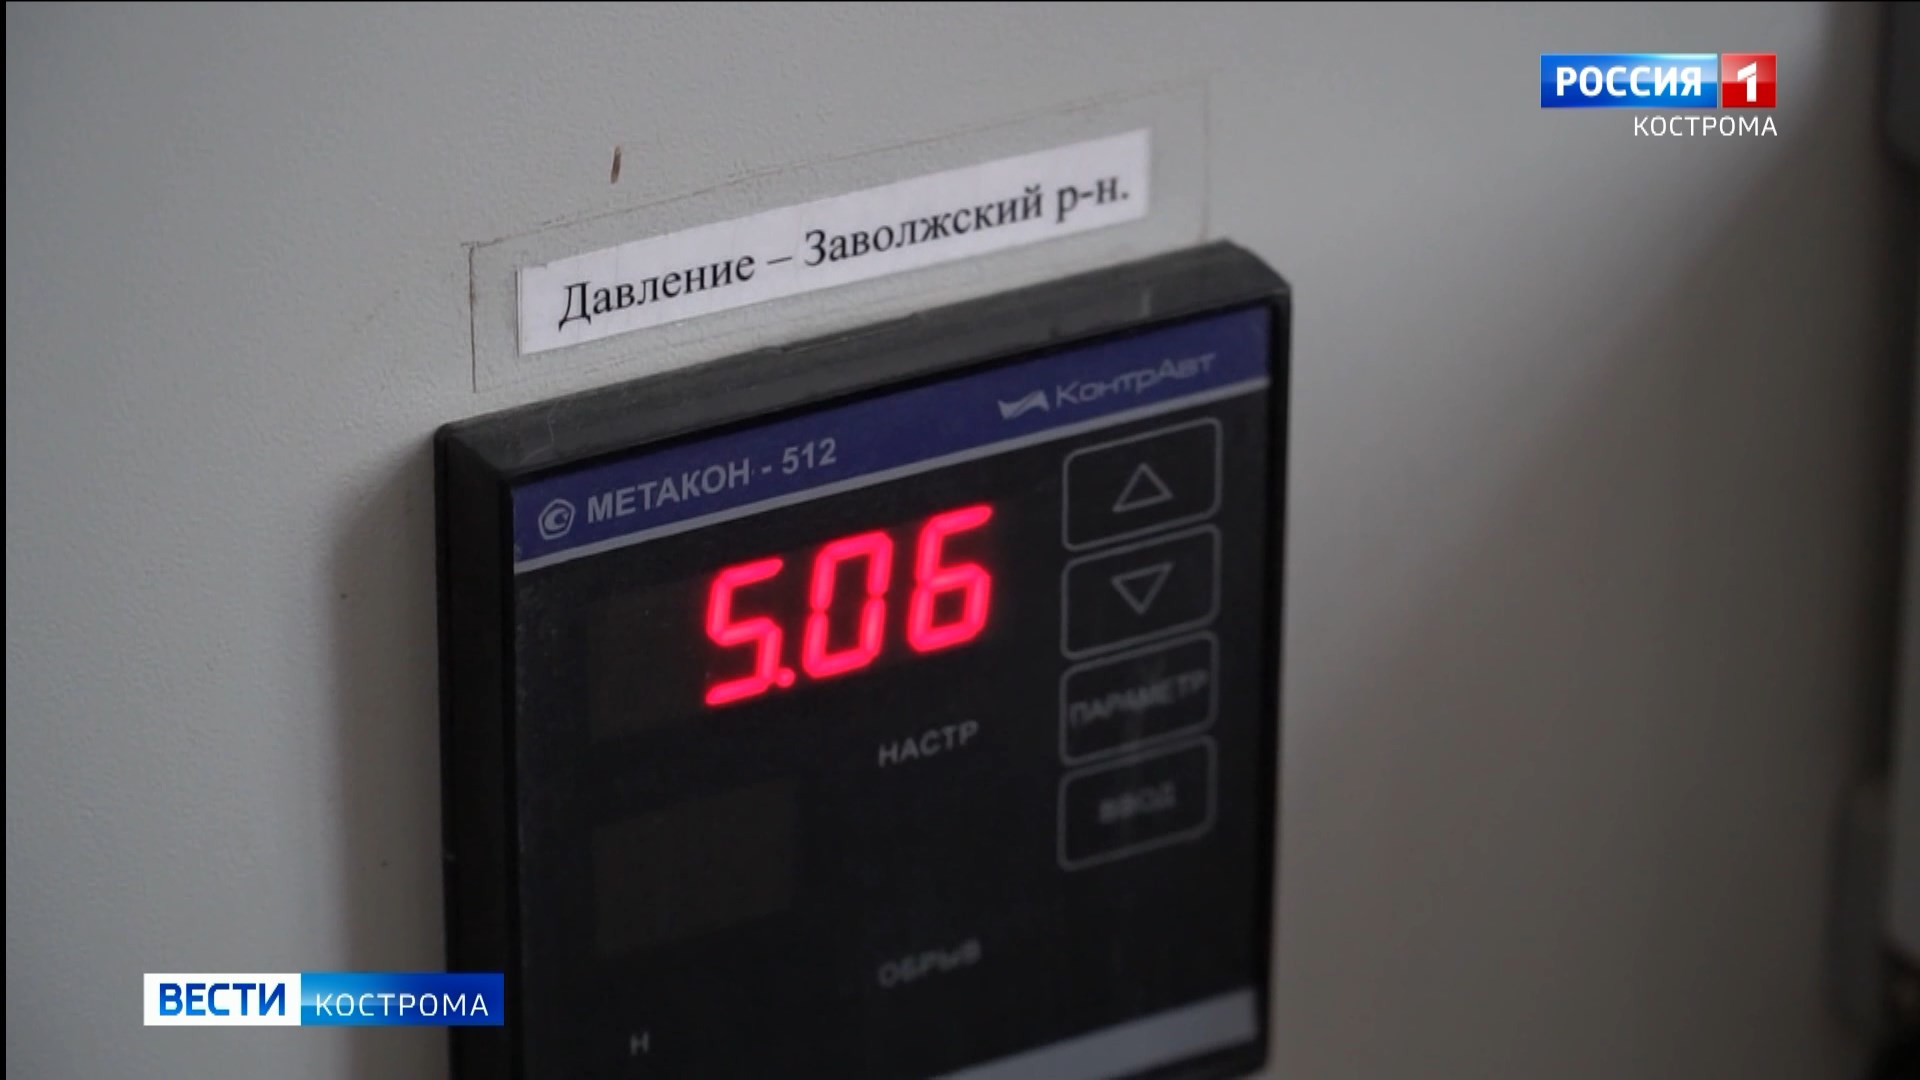 Ревизоры-общественники проверили новый резервуар чистой воды в Костроме